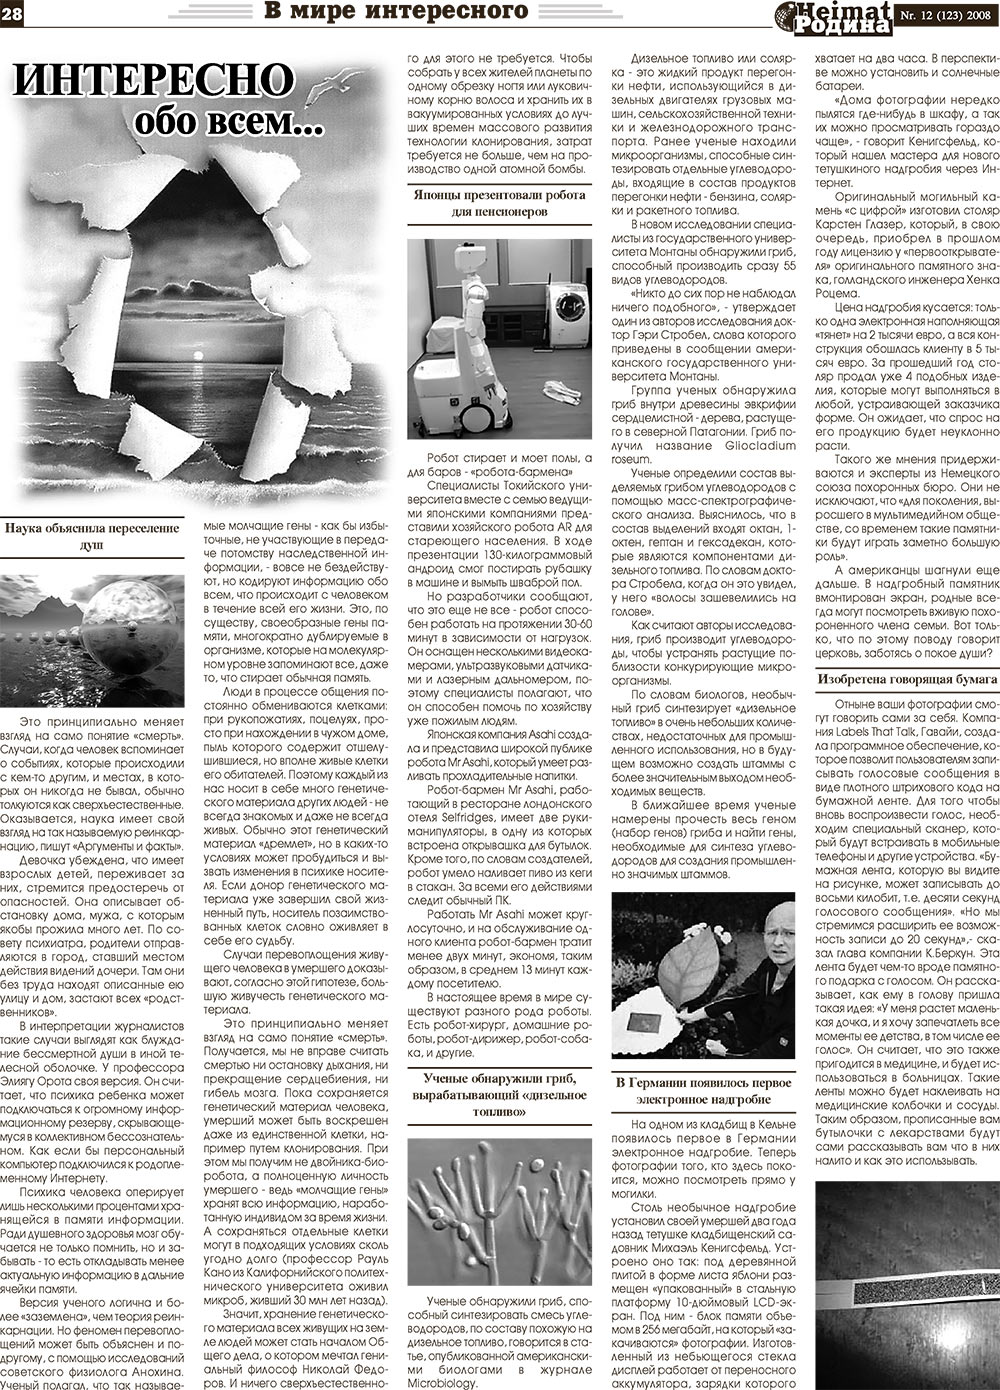 Heimat-Родина (газета). 2008 год, номер 12, стр. 28